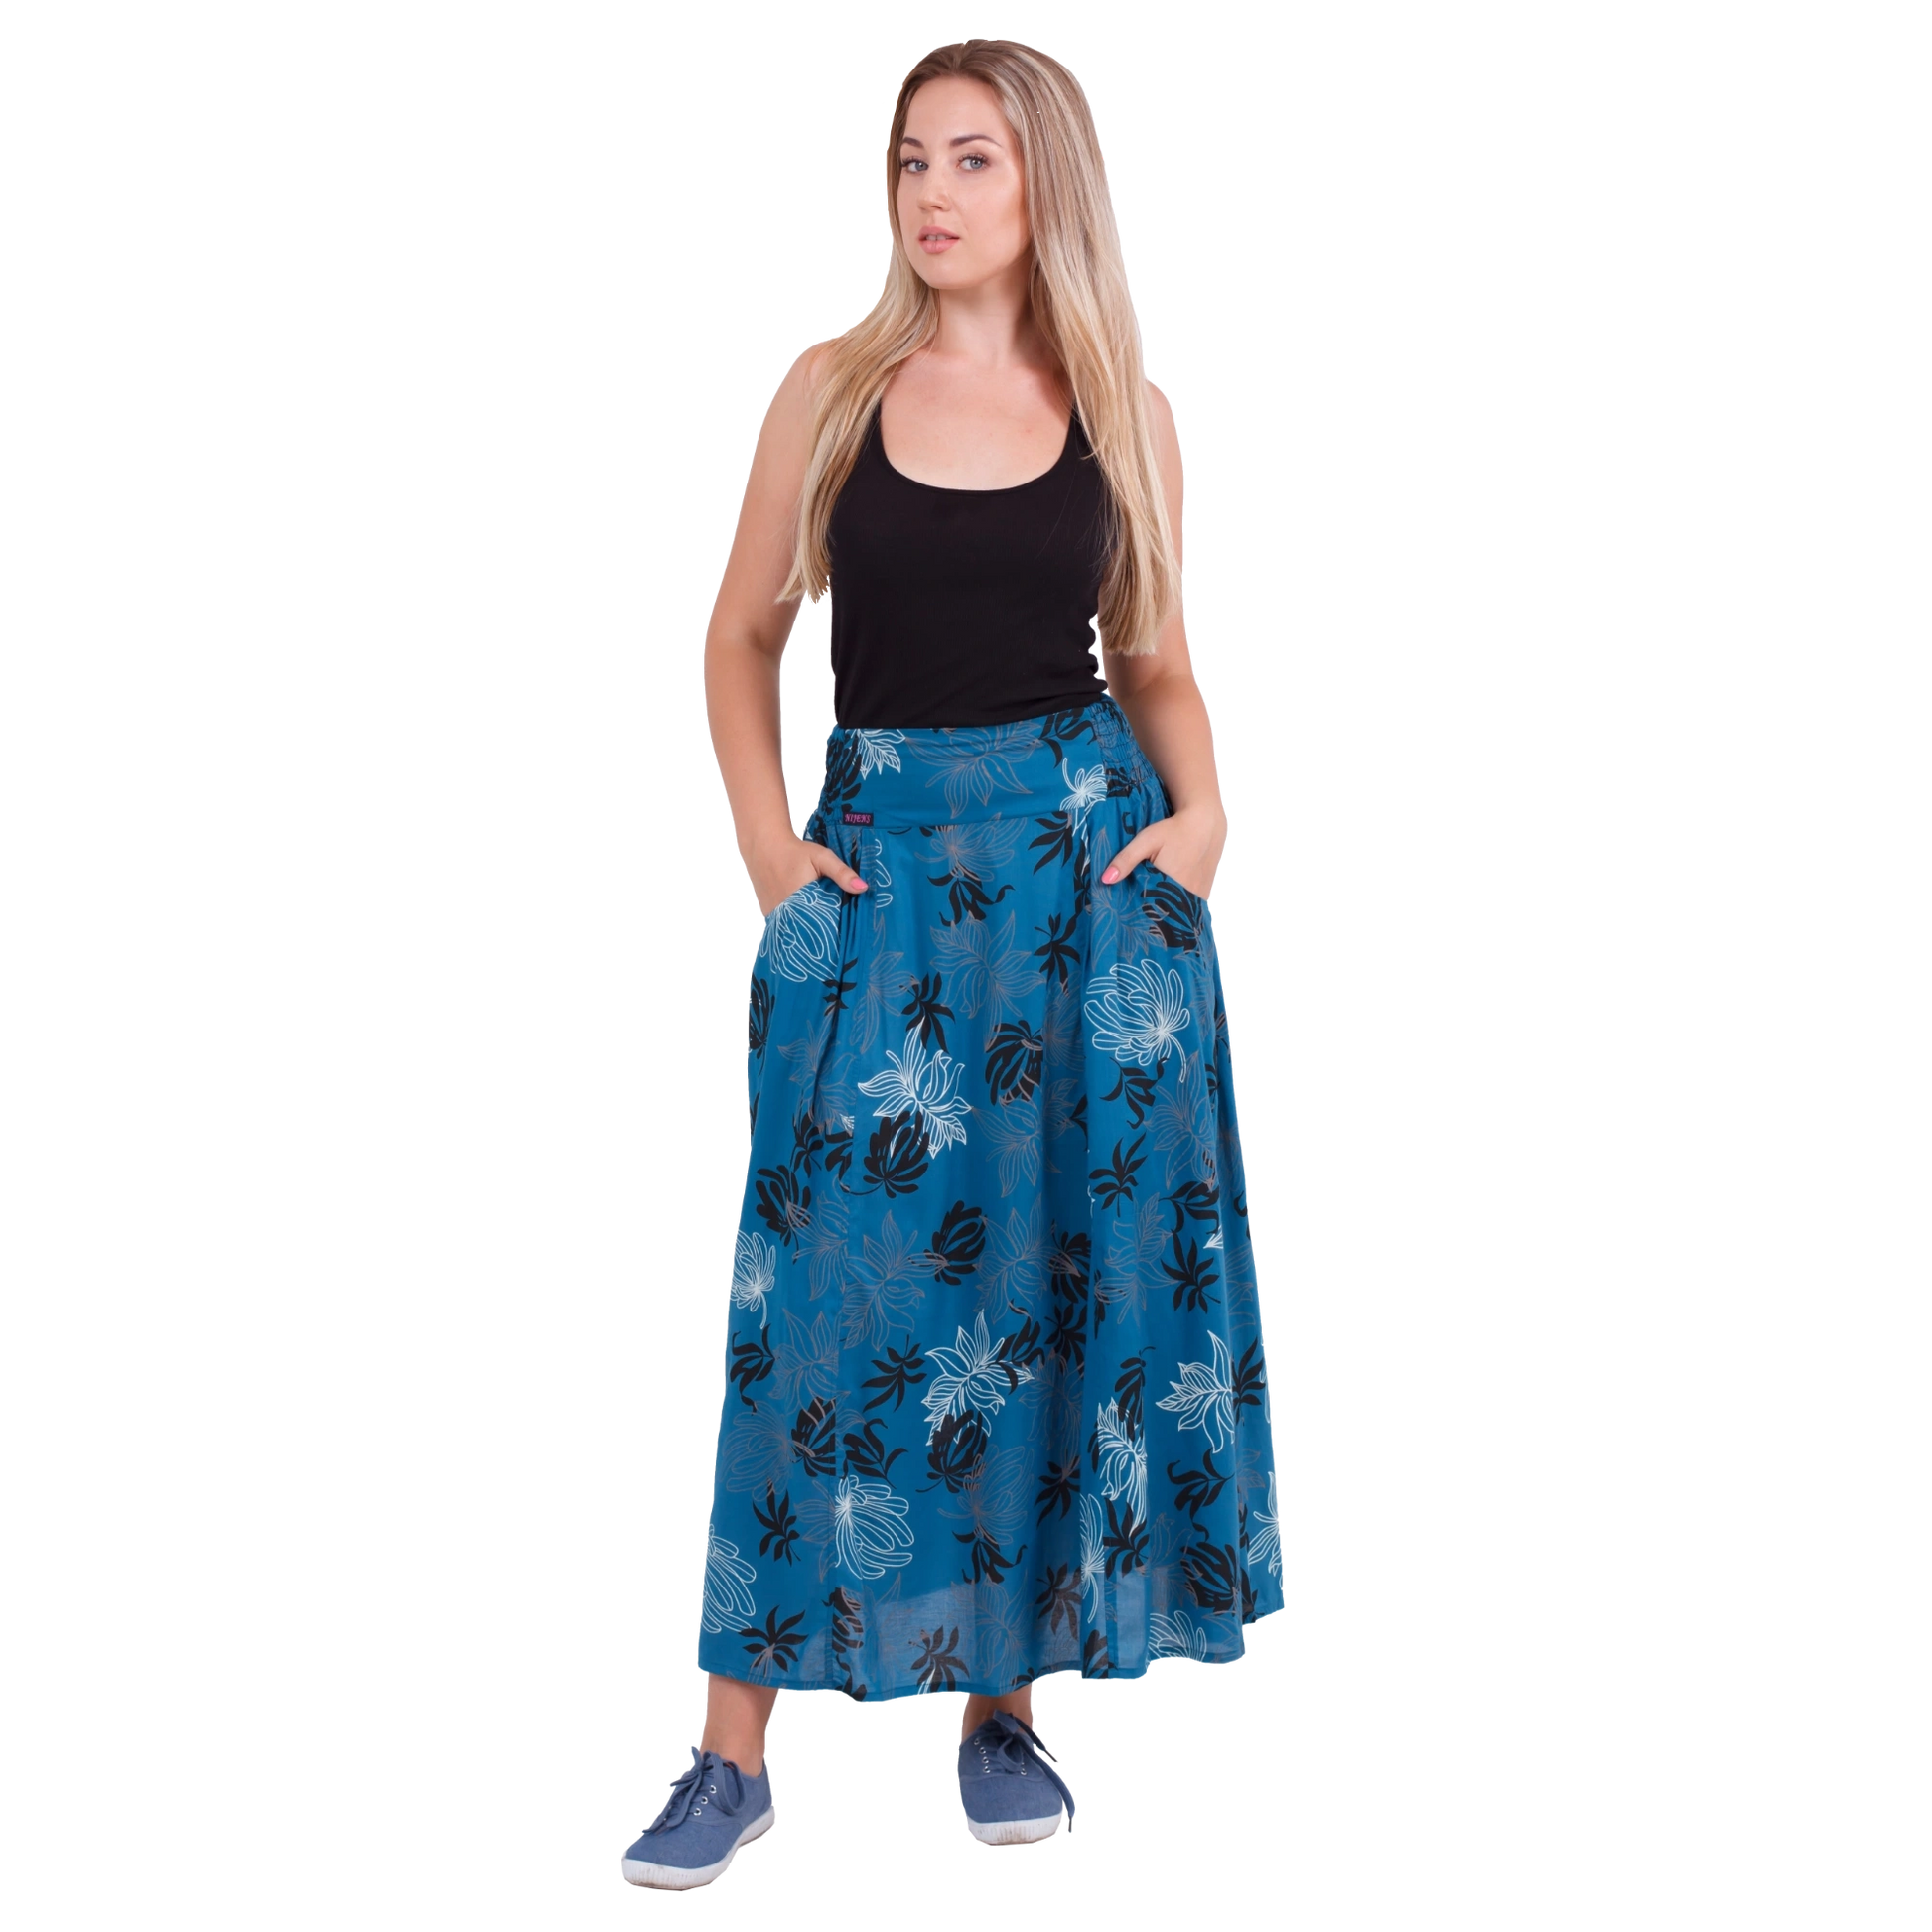 Weibliches Modell mit Sommerrock, Maxirock aus Viskose, Nachtblau mit Blumenmotiven. Elastischer Schlupfbund.